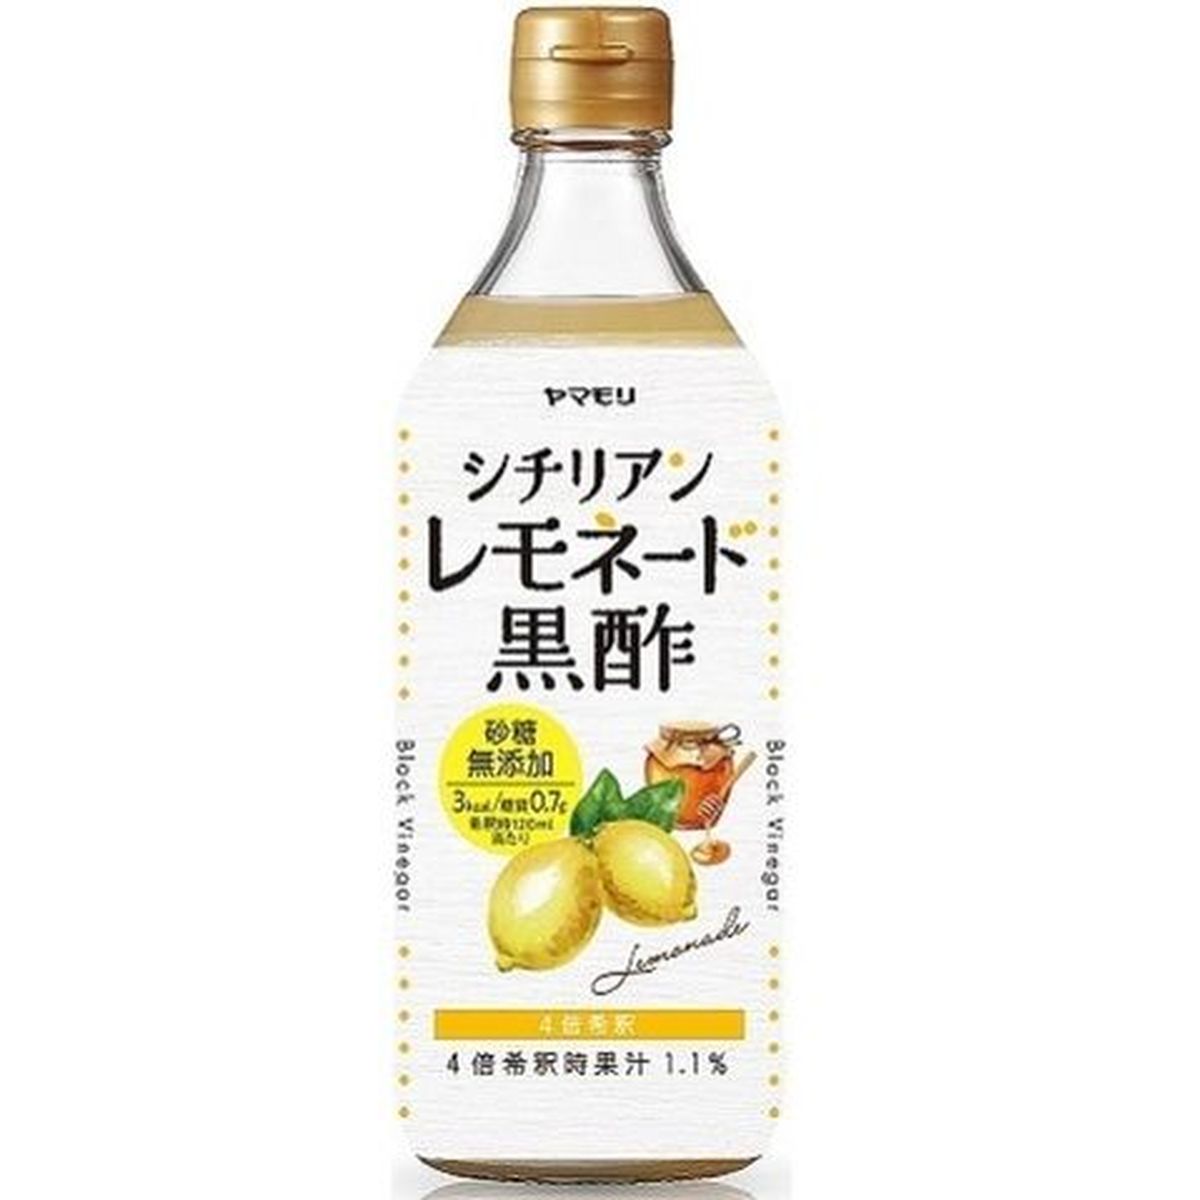 【6個入リ】ヤマモリ 砂糖無添加シチリアレモネード黒酢 500ml